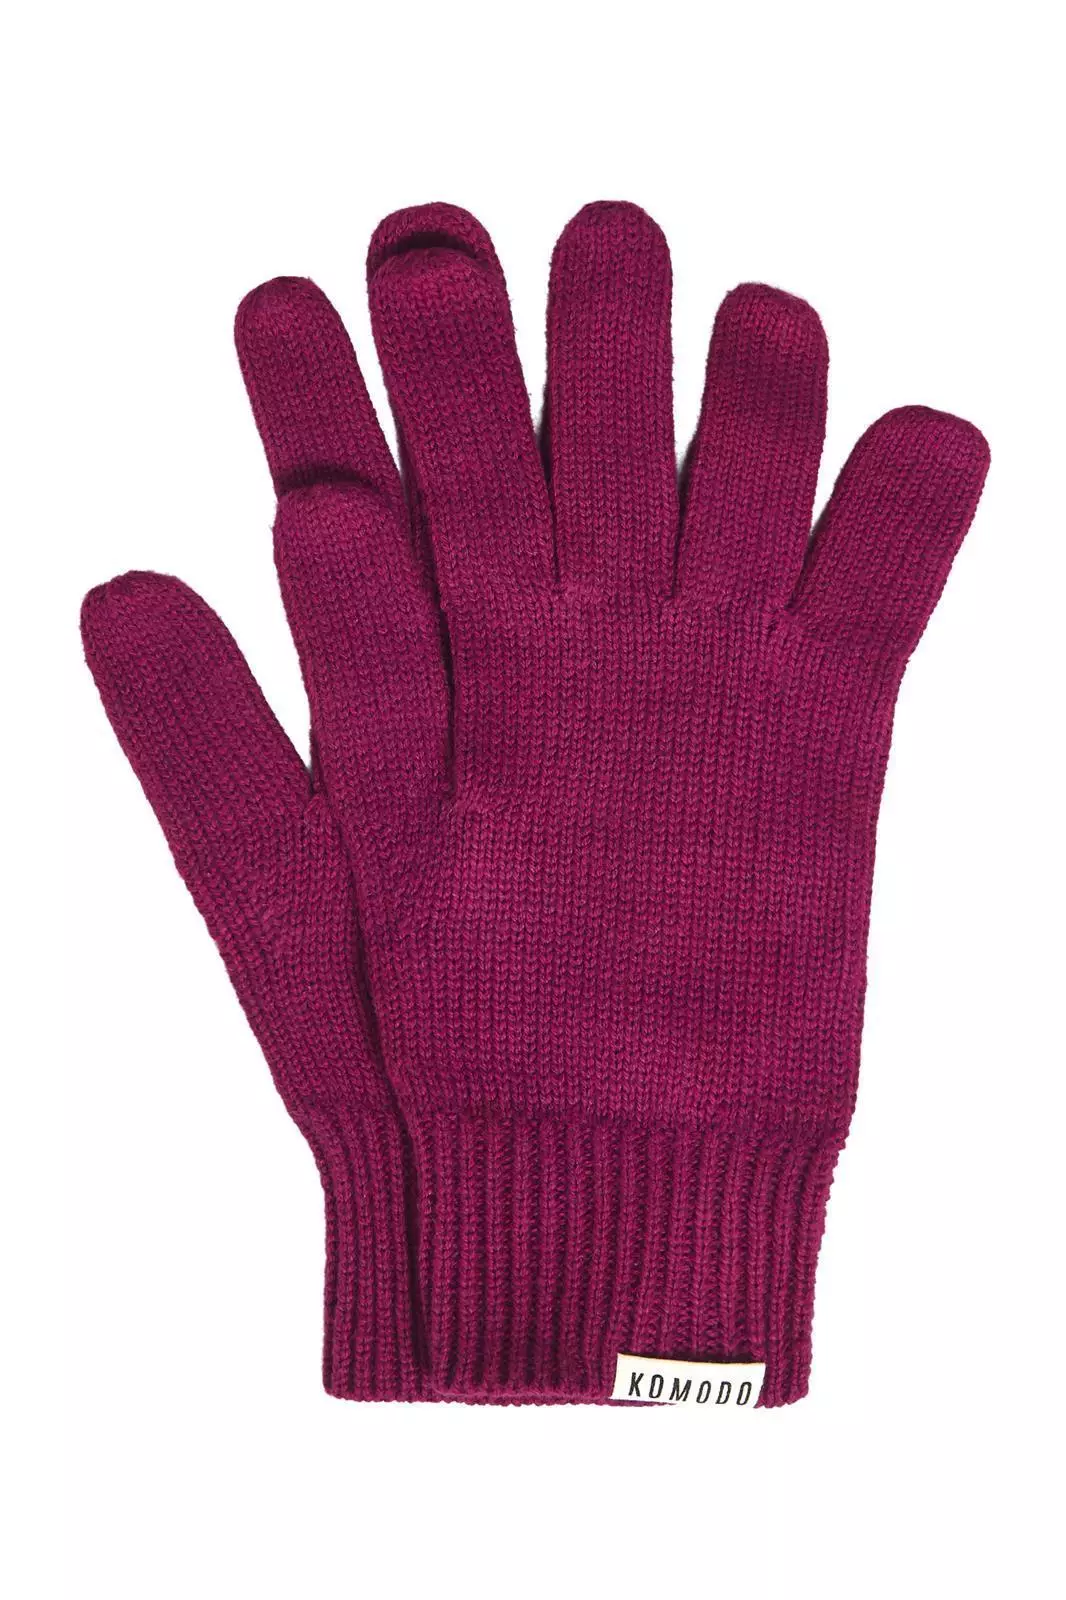 Handschuhe Modell: City Gloves